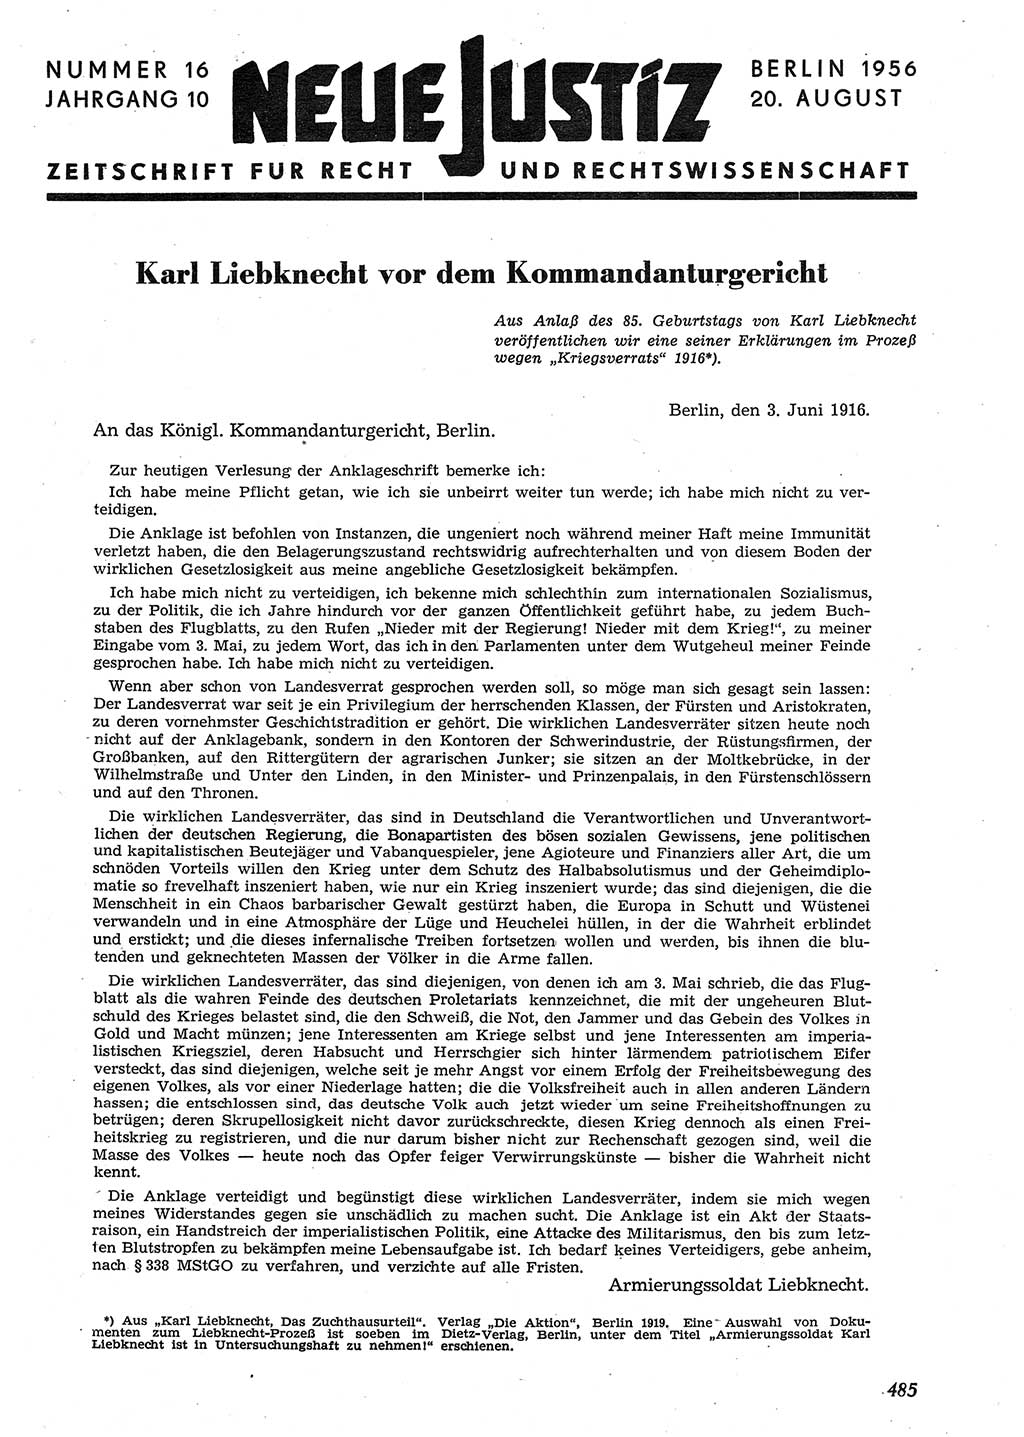 Neue Justiz (NJ), Zeitschrift für Recht und Rechtswissenschaft [Deutsche Demokratische Republik (DDR)], 10. Jahrgang 1956, Seite 485 (NJ DDR 1956, S. 485)